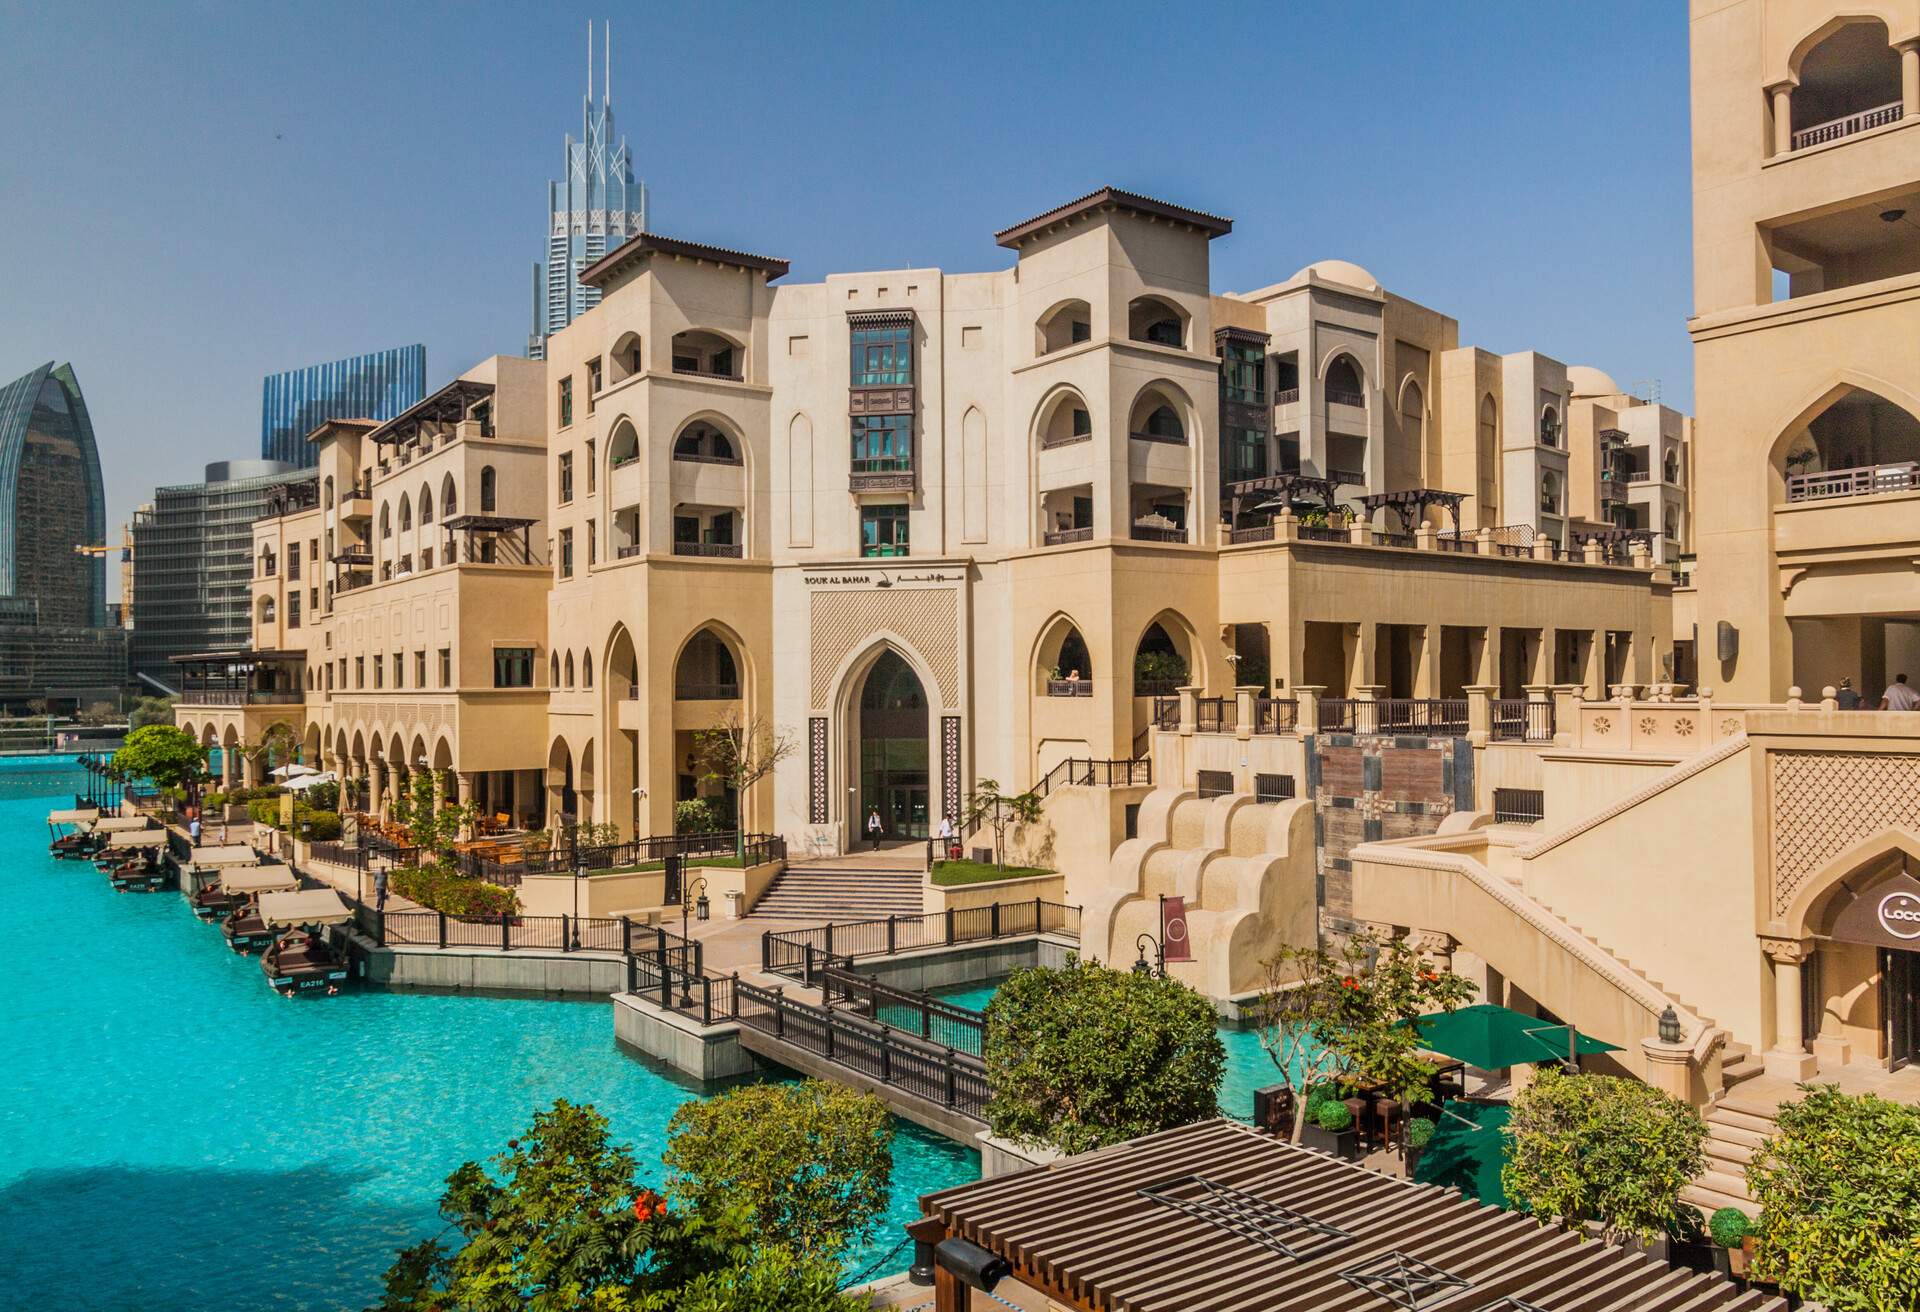 DUBAI, UAE - MARCH 12, 2017: View of the Souk Al Bahar shopping mall.